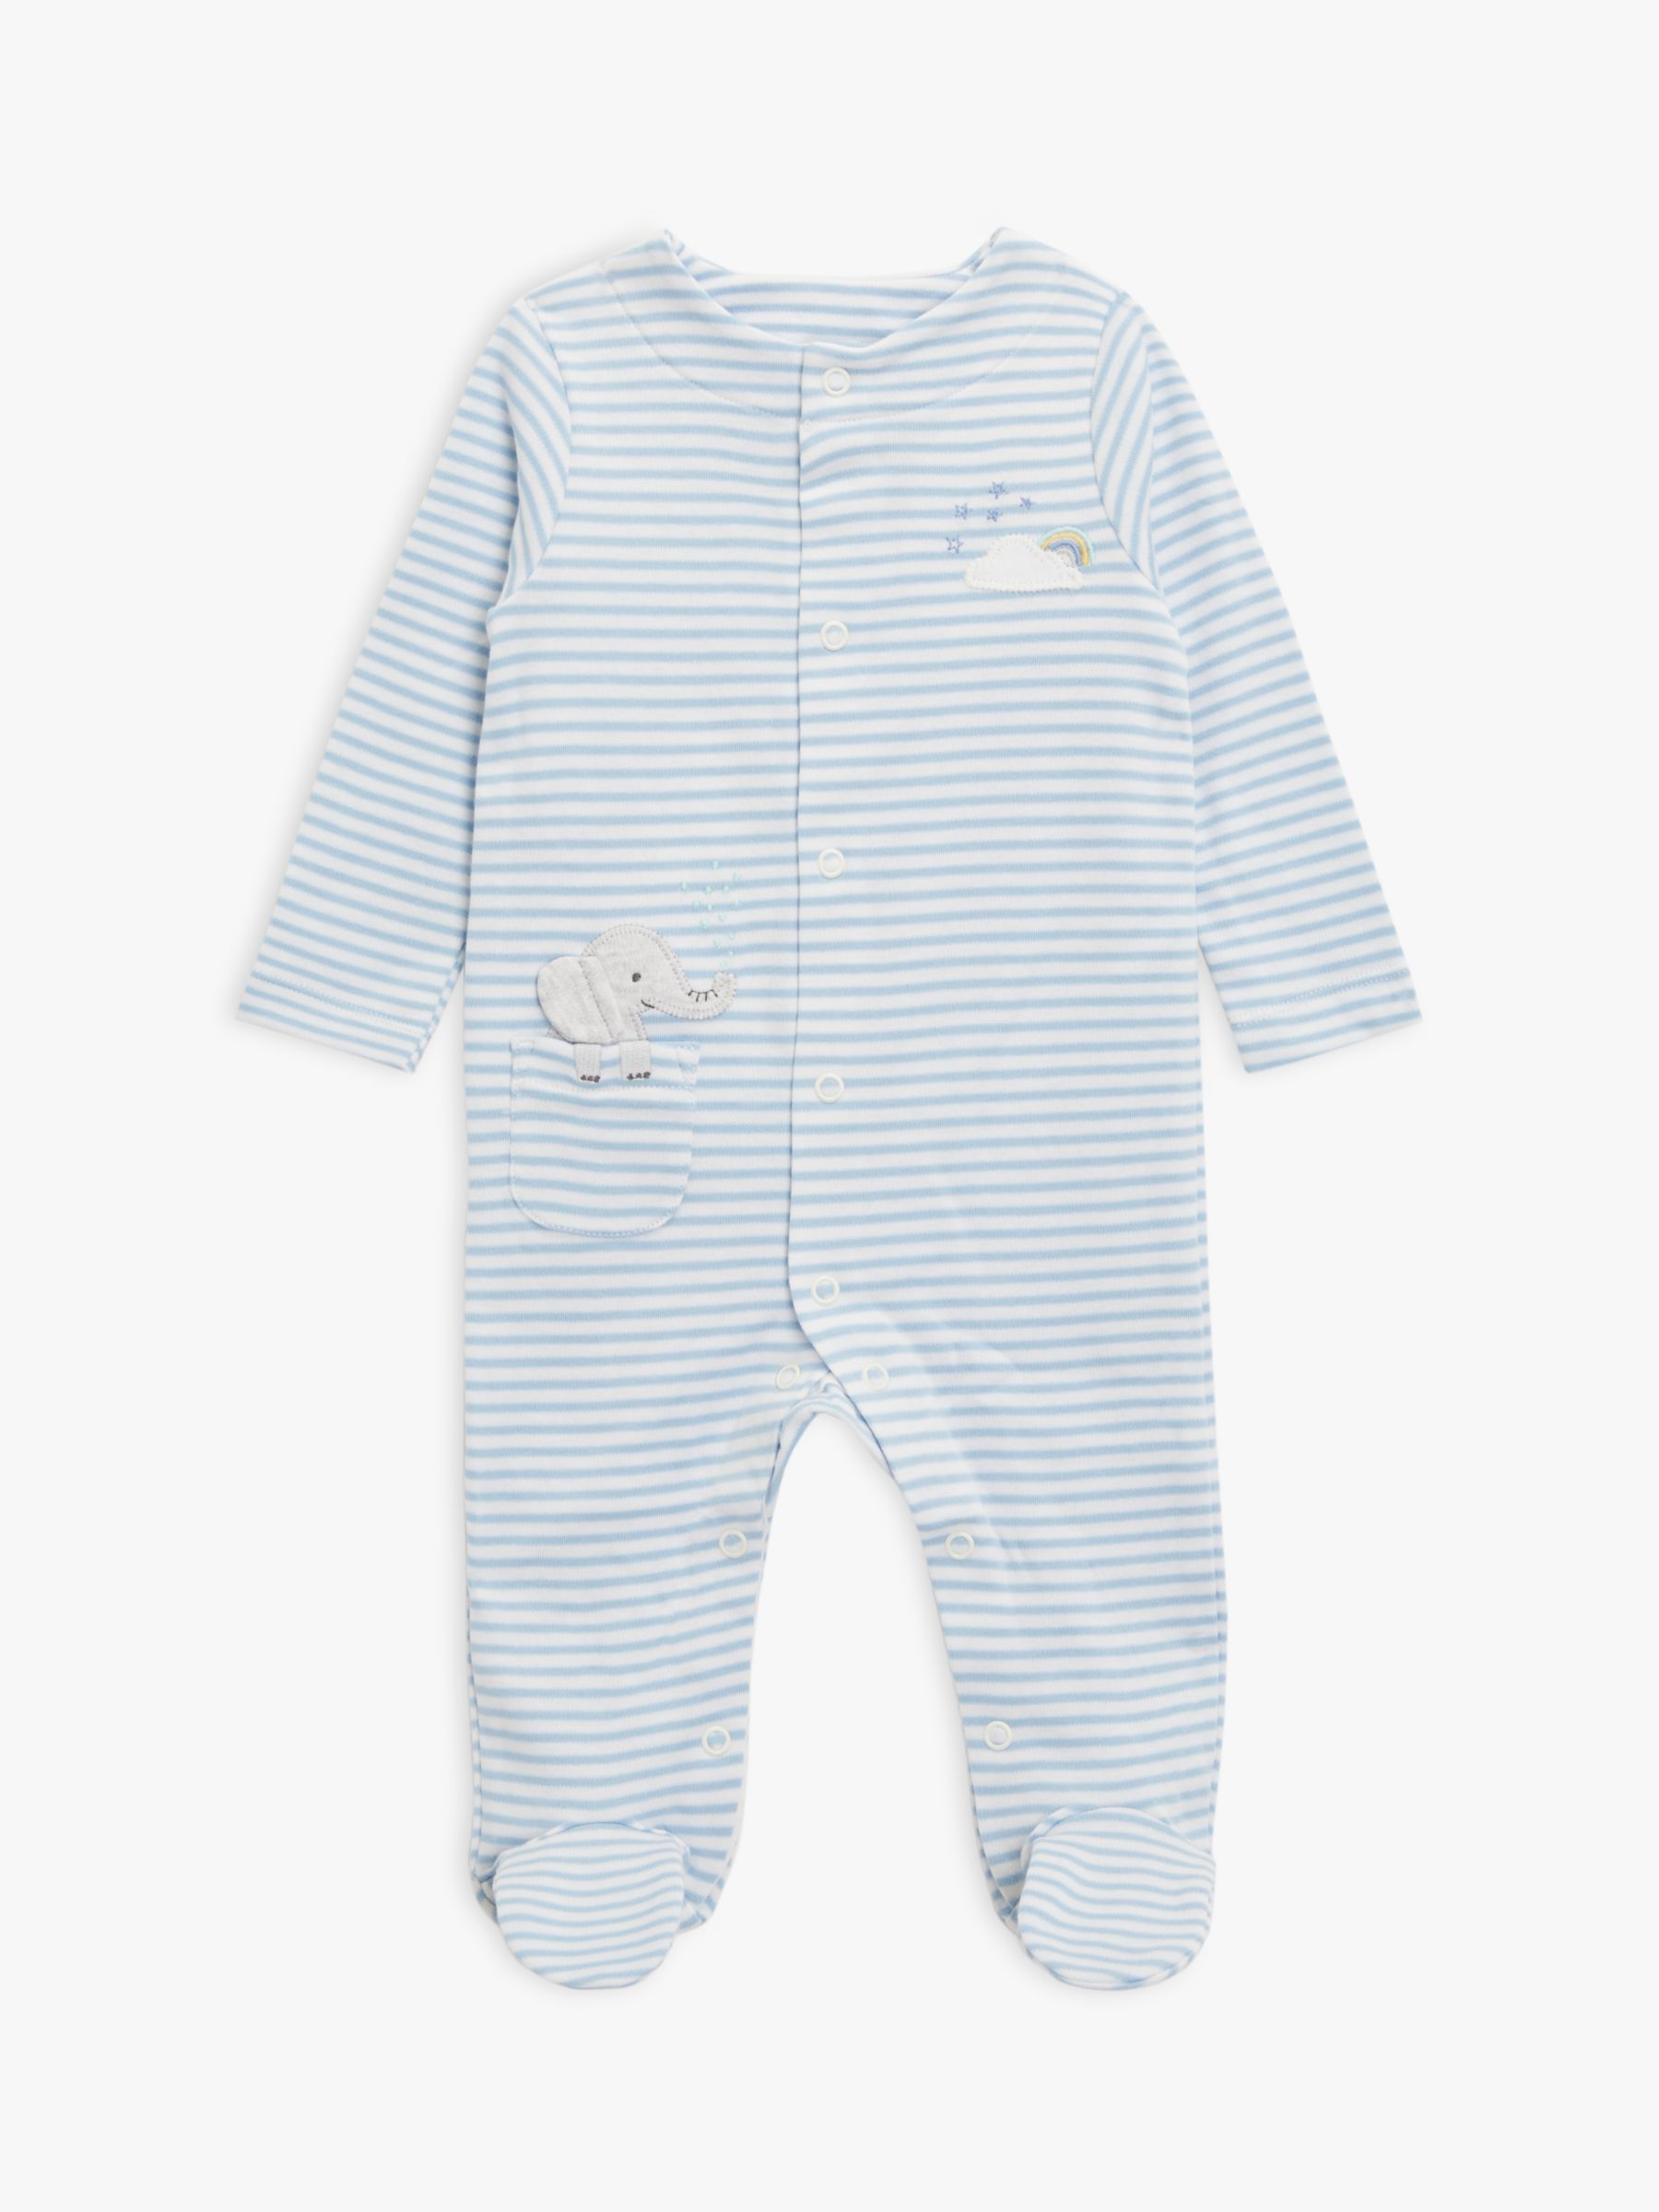 John Lewis Baby Elephant Stripe Sleepsuit, Blue/Multi, Tiny Baby